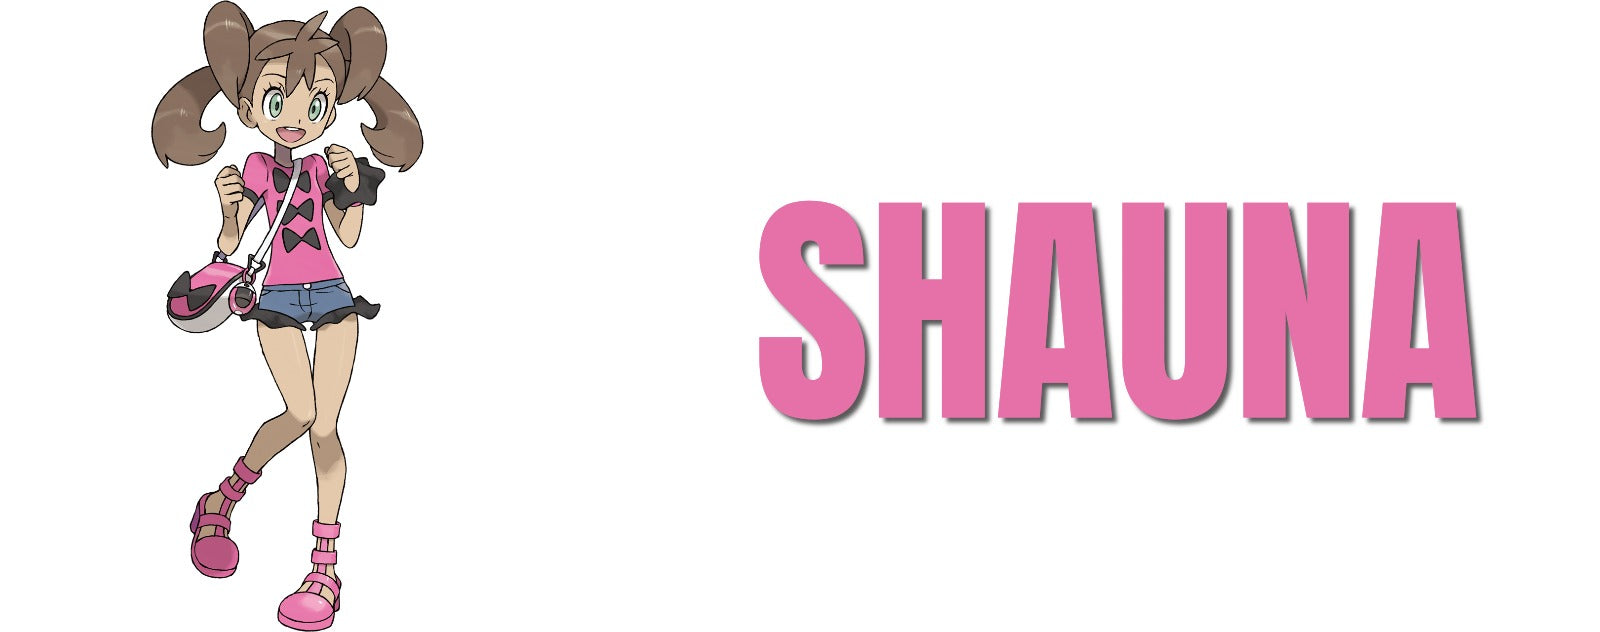 Shauna your friend dresser